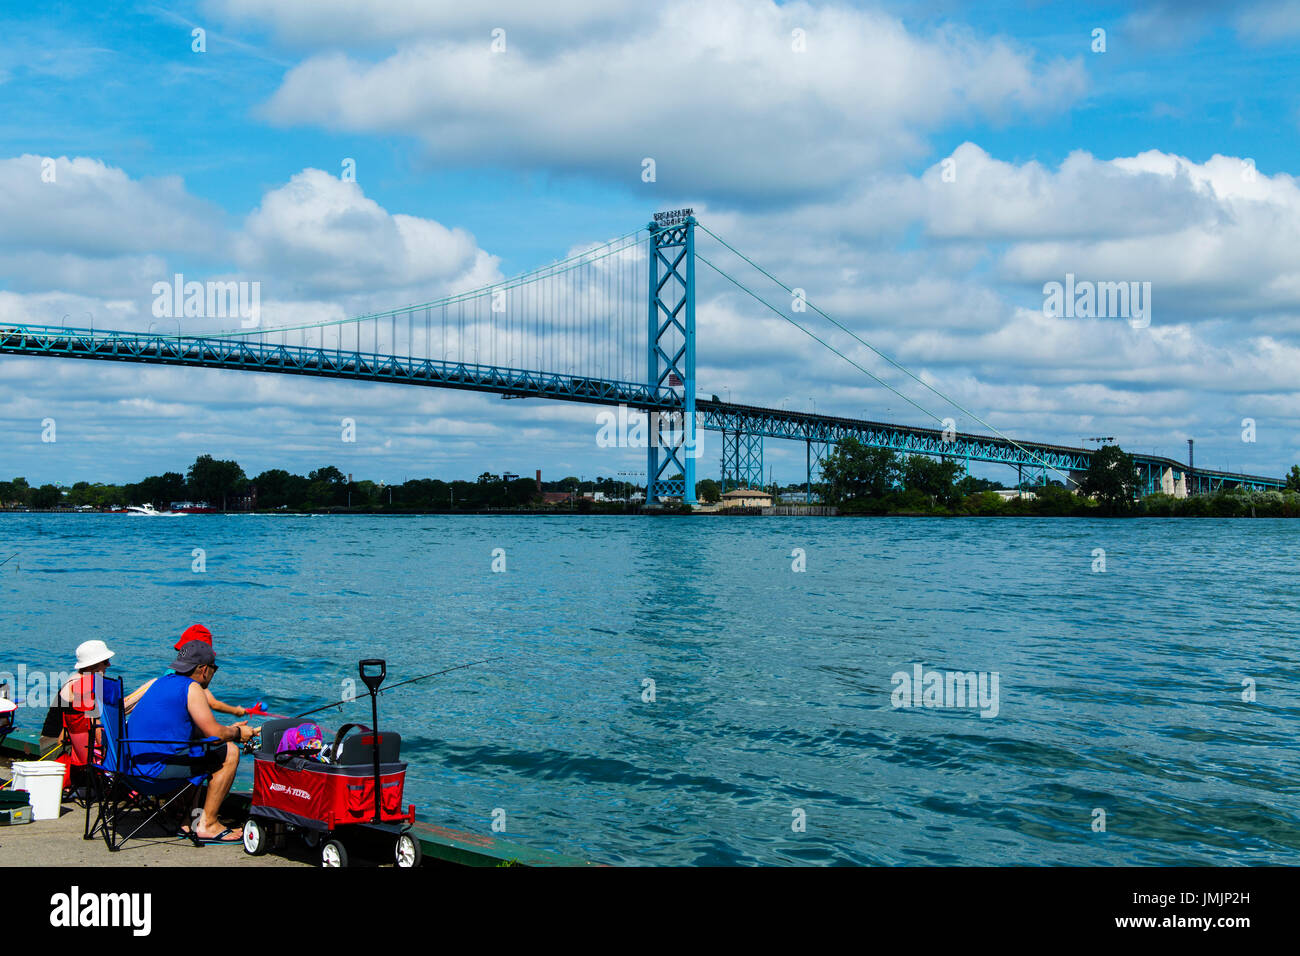 Le pont Ambassador enjambe la rivière Détroit entre Windsor, Ontario Canada et Détroit, Michigan, USA Banque D'Images